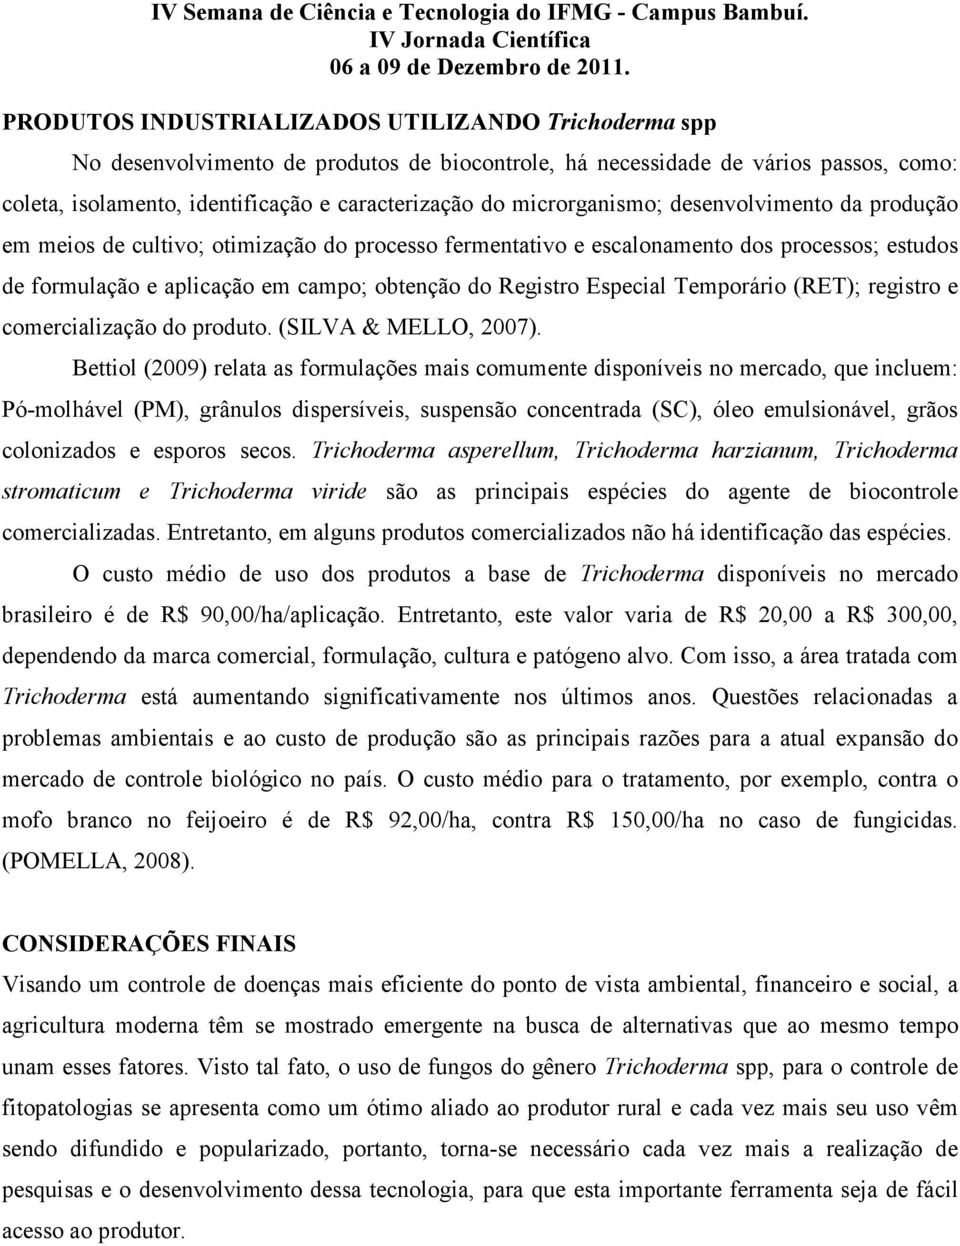 Especial Temporário (RET); registro e comercialização do produto. (SILVA & MELLO, 2007).